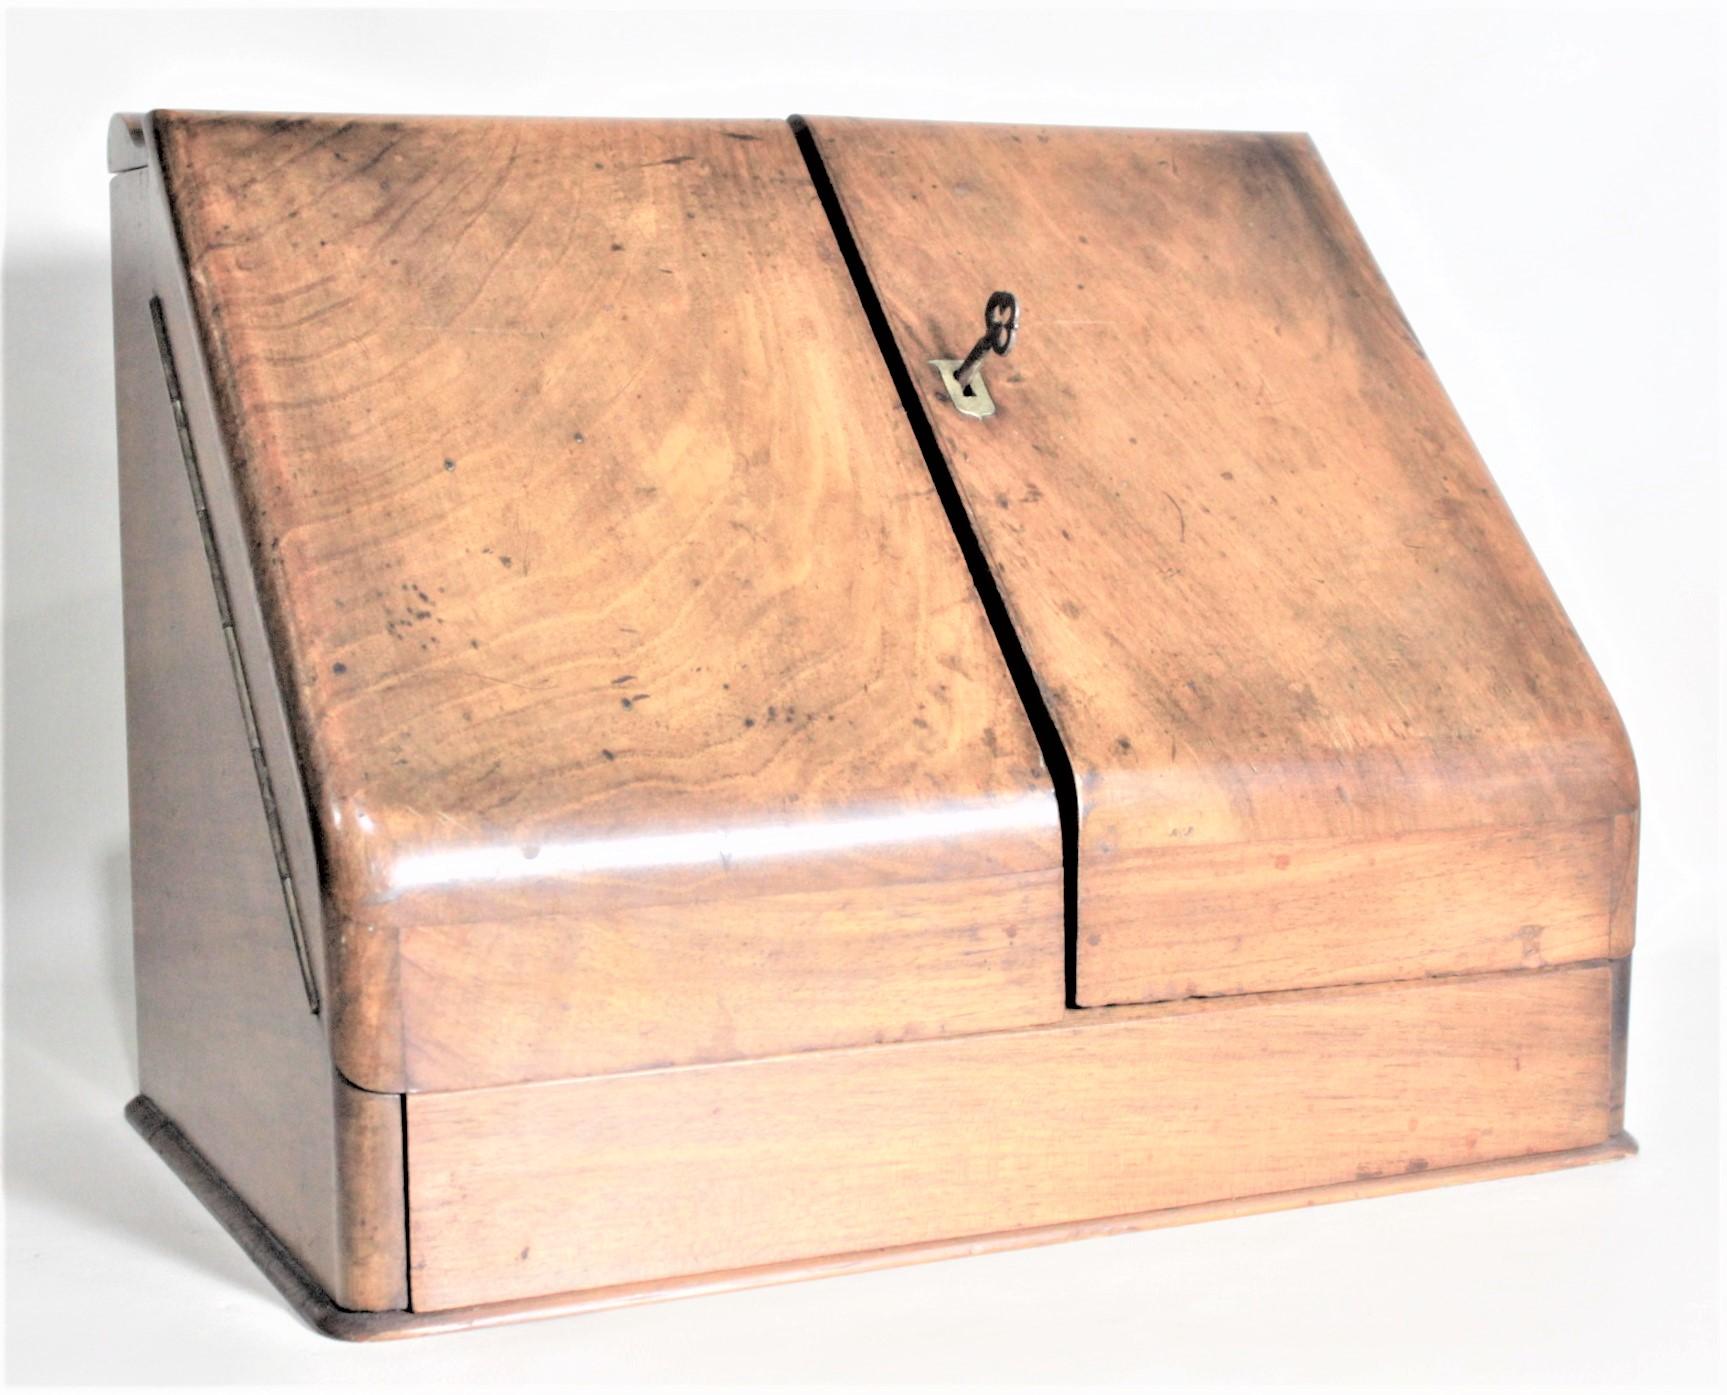 Diese massive antike Mahagoni-Schreibtischplatte ist unsigniert, wurde aber vermutlich um 1900 in England im edwardianischen Stil hergestellt. Die Vorderseite der Truhe öffnet sich mit zwei Türen mit Messingscharnieren, um eine Reihe von Fächern mit